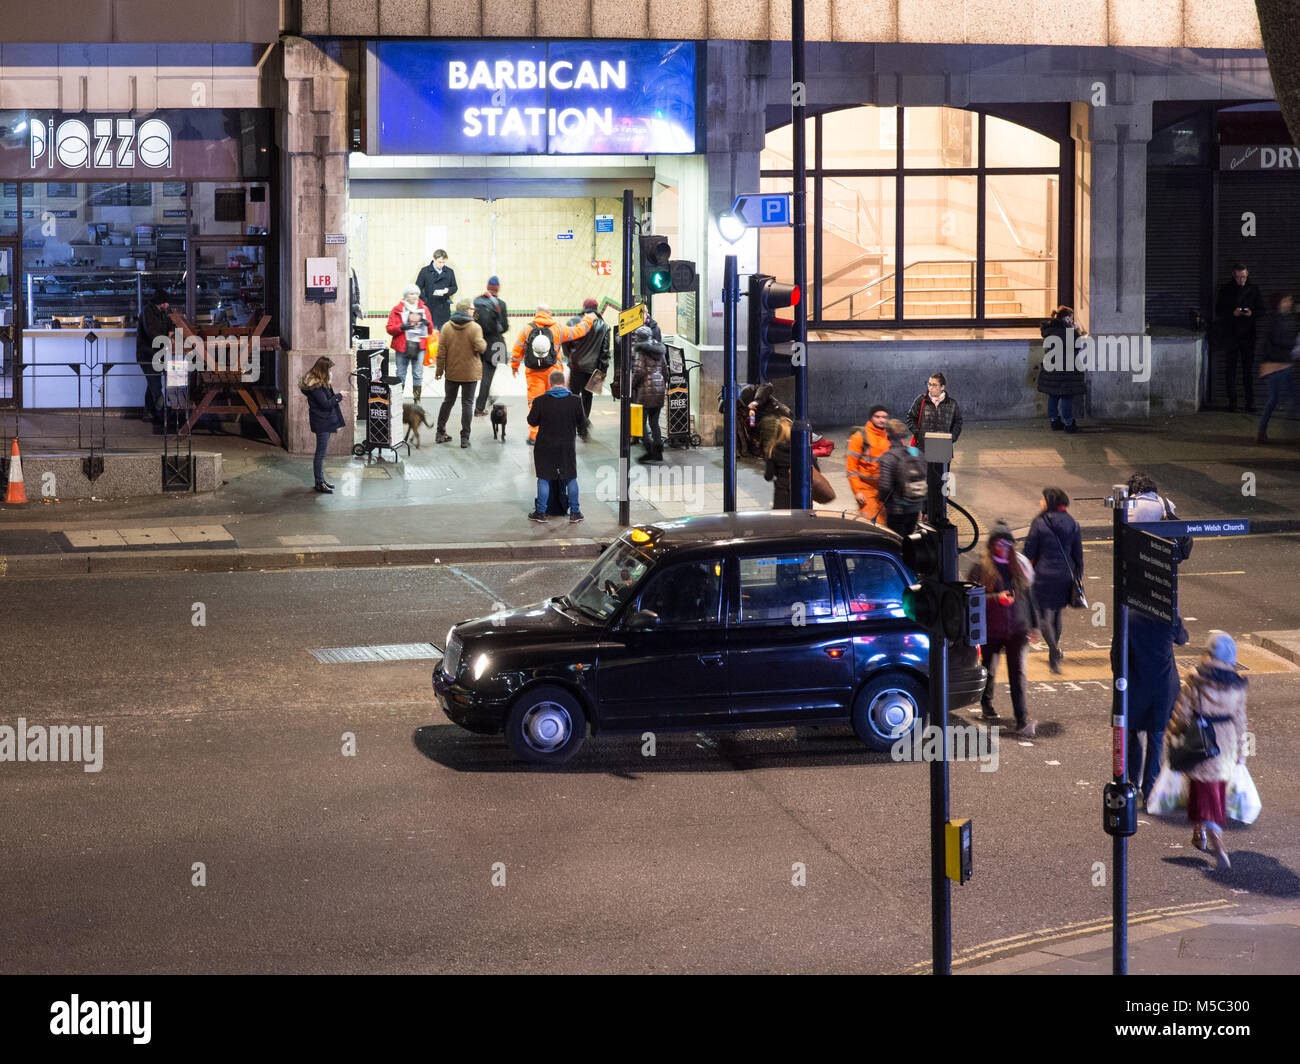 London, England, UK - Februar 8, 2018: Pendler Aldersgate Street überqueren in der Londoner City, vorbei an einer traditionellen schwarzen Londoner Taxis, Barbic zu erreichen. Stockfoto